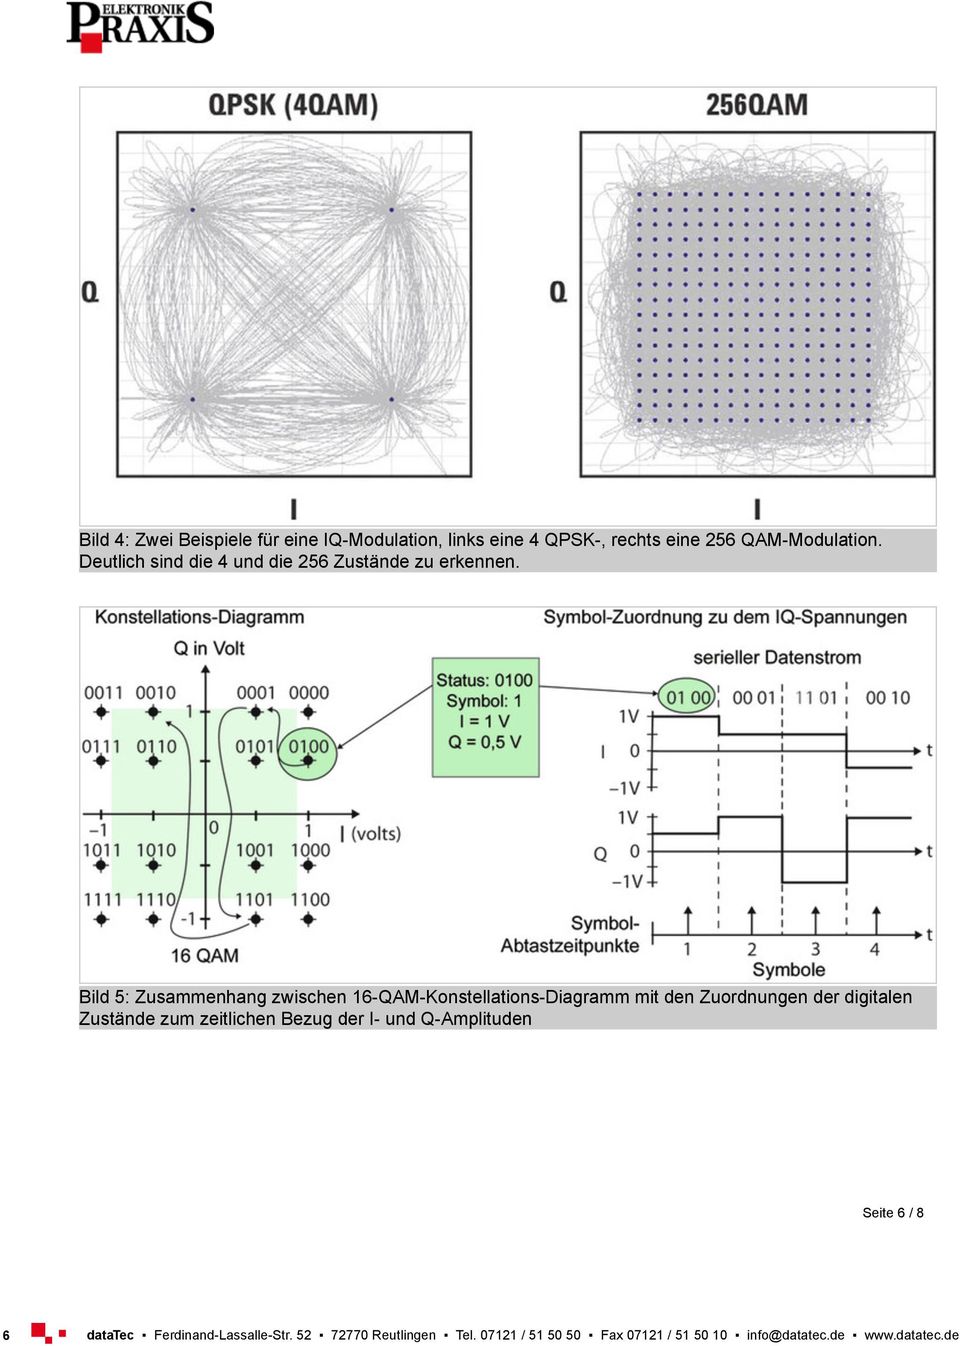 Bild 5: Zusammenhang zwischen 16-QAM-Konstellations-Diagramm mit den Zuordnungen der digitalen Zustände zum